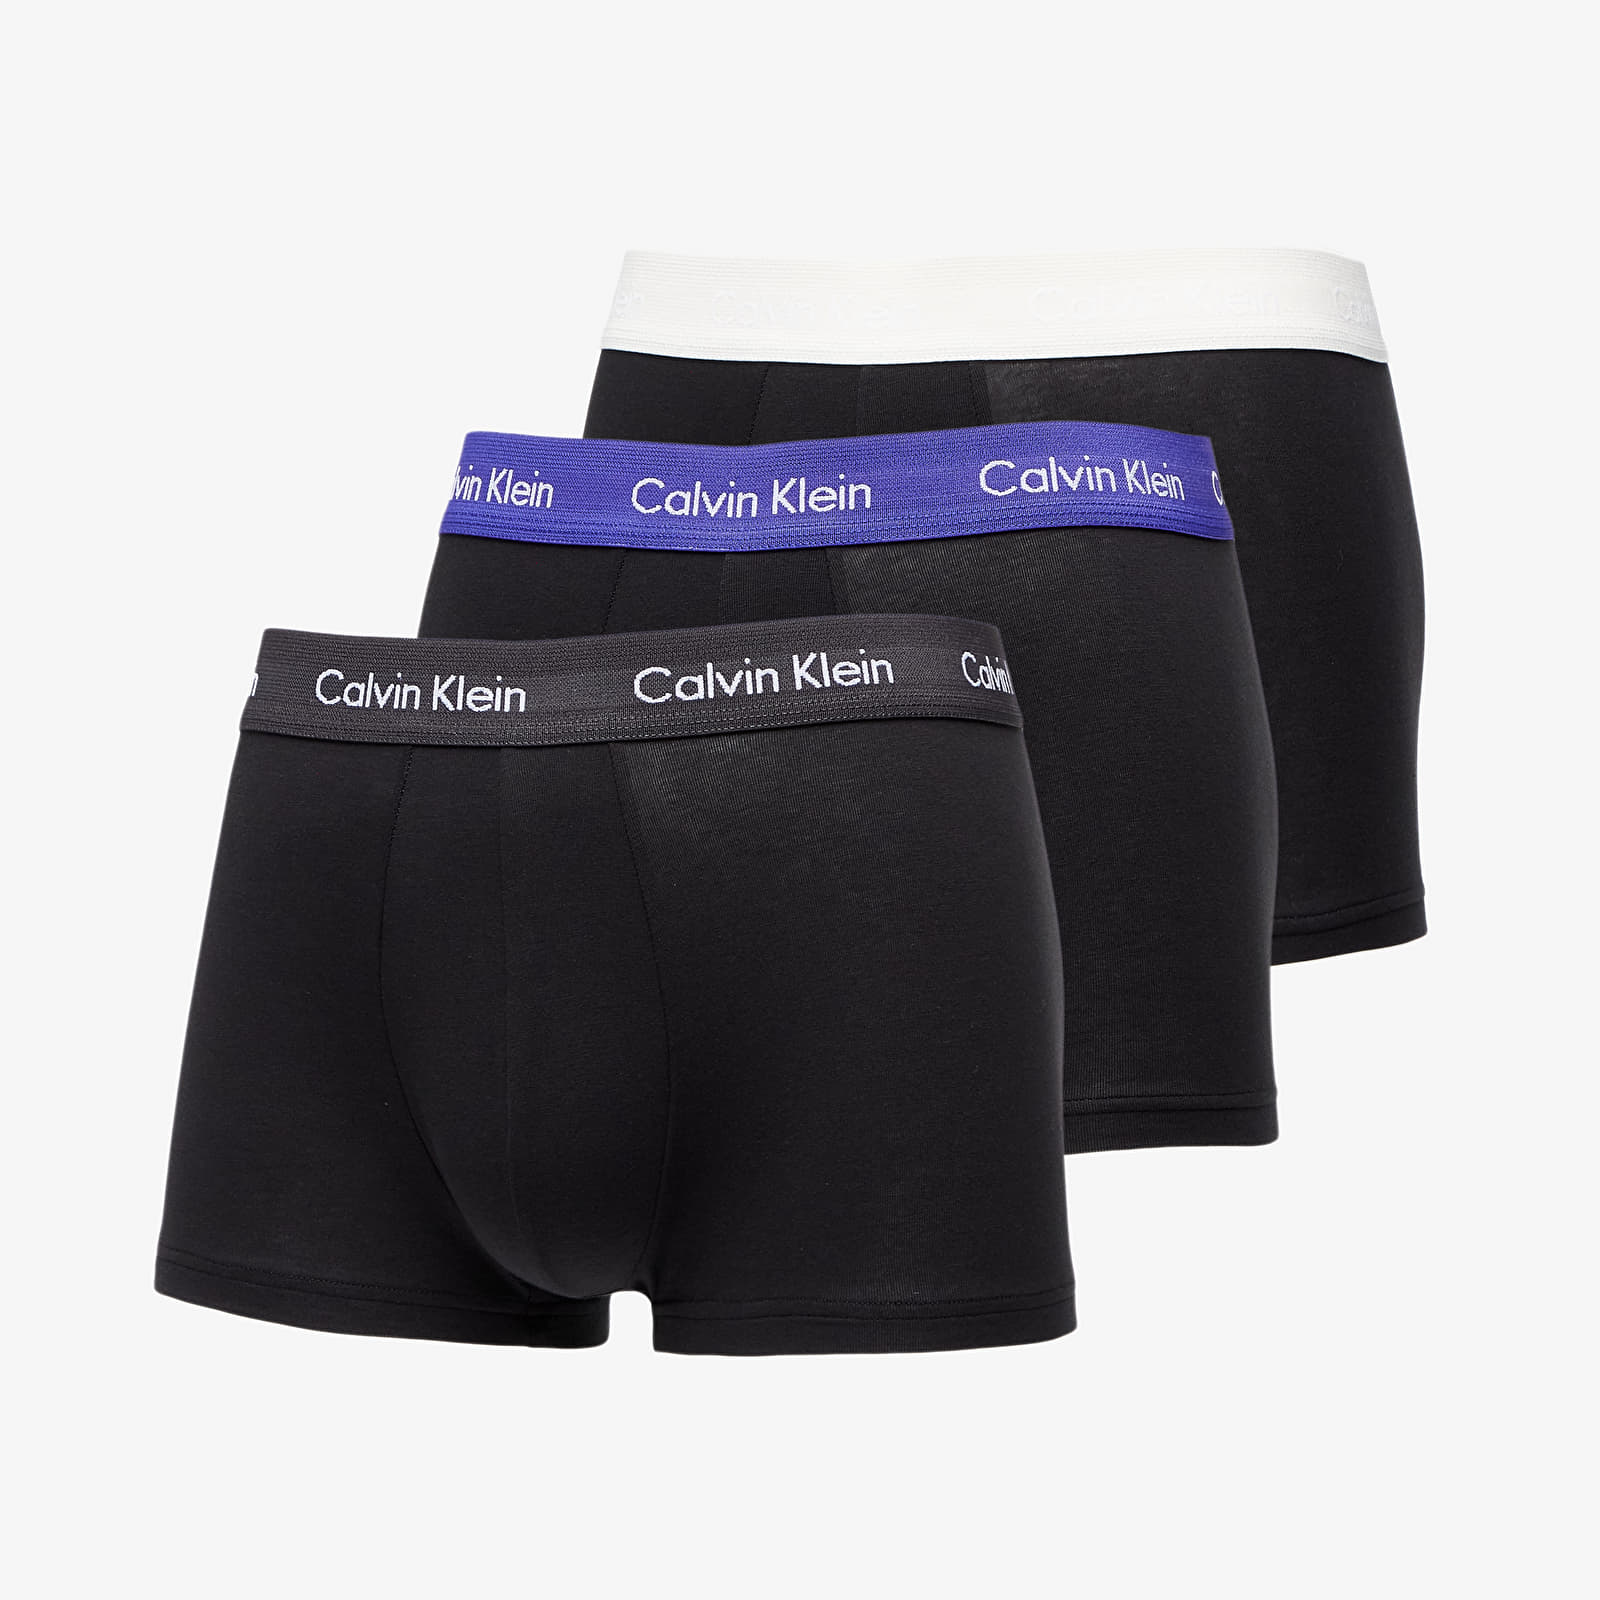 Levně Calvin Klein Cotton Stretch Classic Fit Low Rise Trunk 3-Pack Black/ Off White/ Black/ Purple